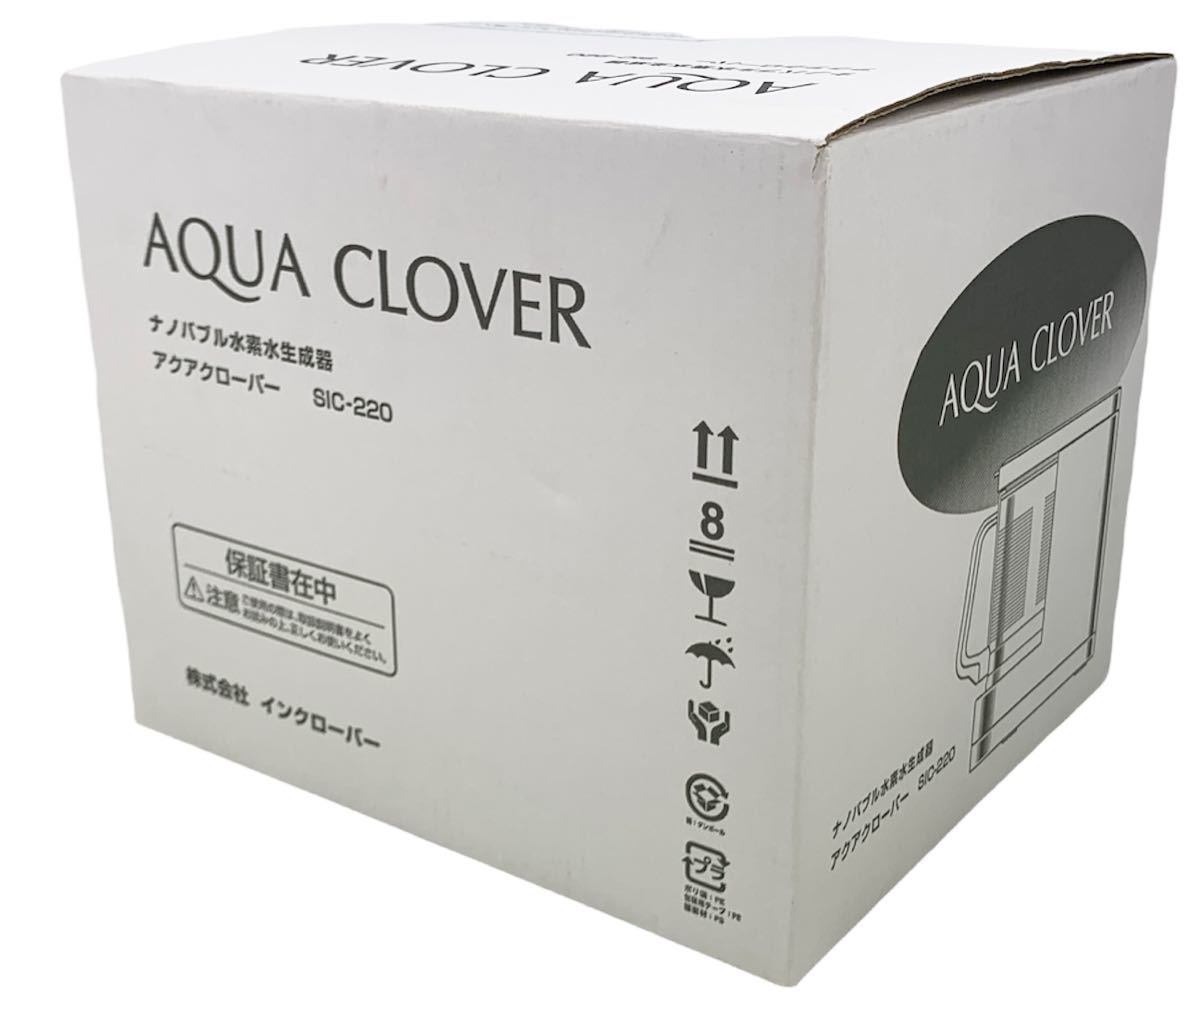 新品未開封品】 AQUA CLOVER アクアクローバー ナノバブル 水素水生成